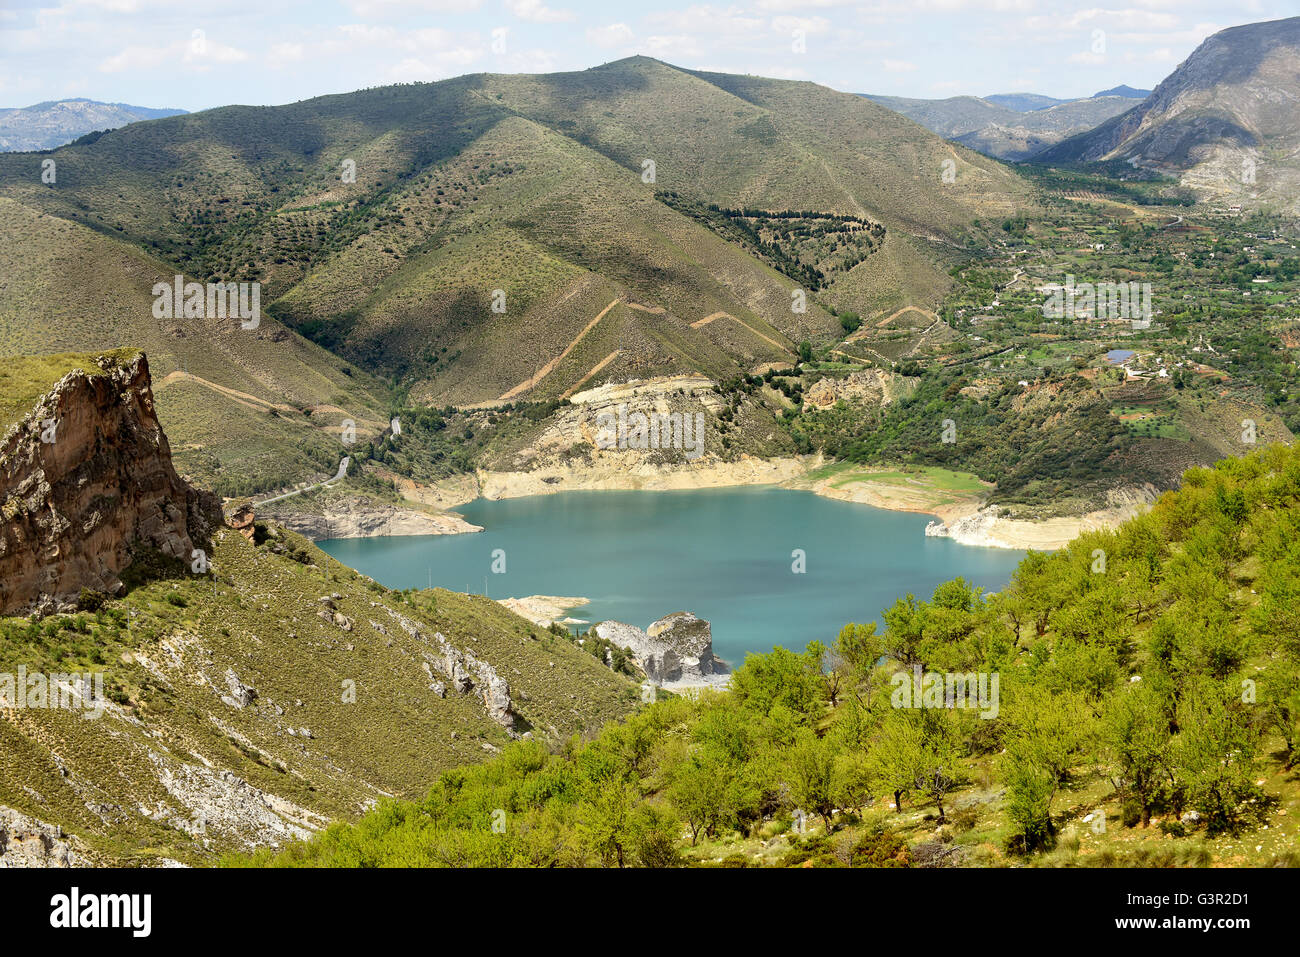 Le lac artificiel de Guejar Sierra 'Embalse de Canales' dans le parc national de la Sierra Nevada en Andalousie Espagne. Banque D'Images